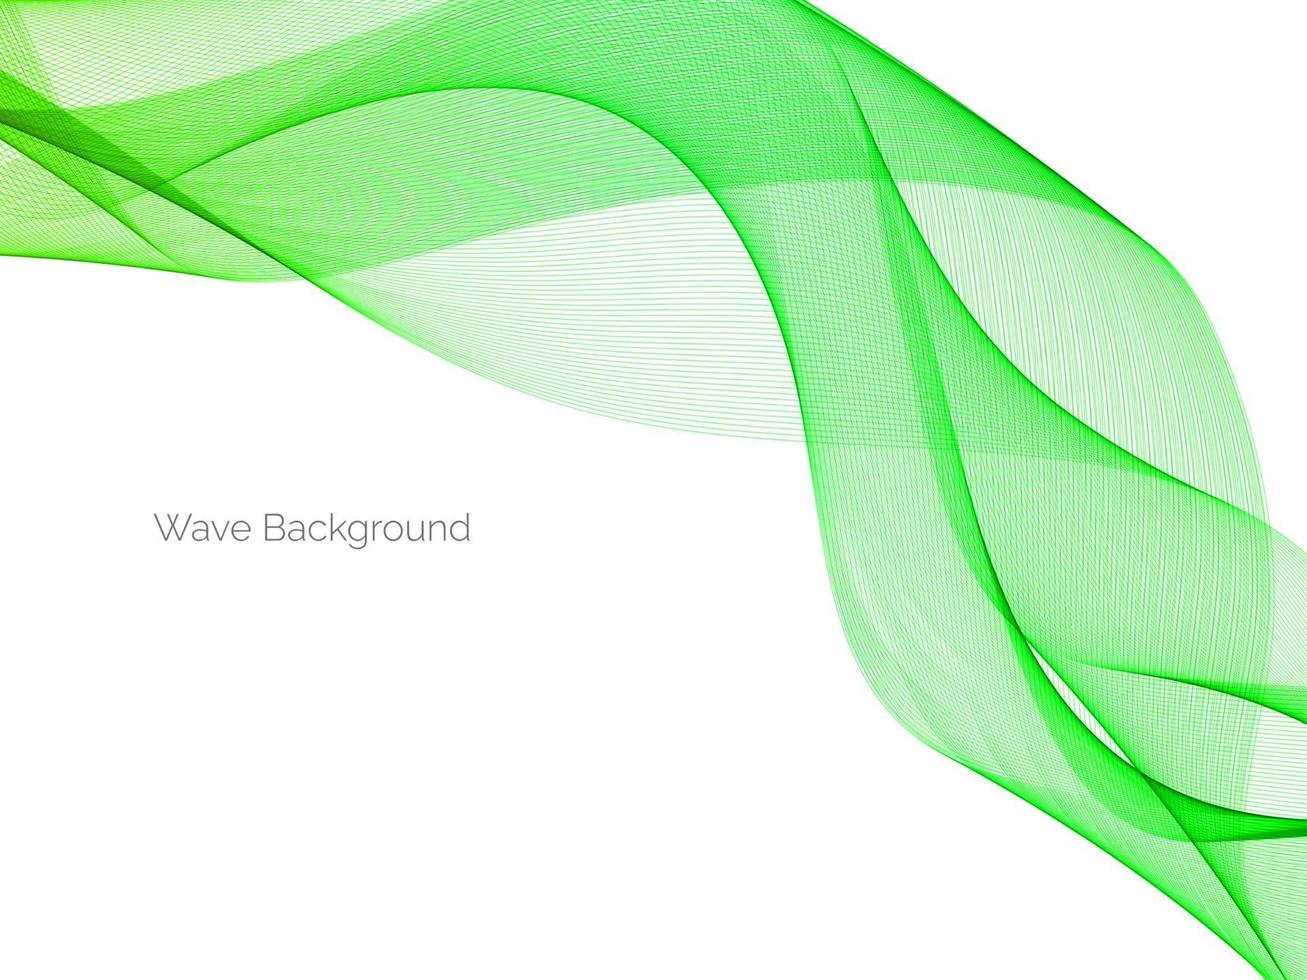 astratto verde decorativo elegante onda moderna design sfondo banner vettore